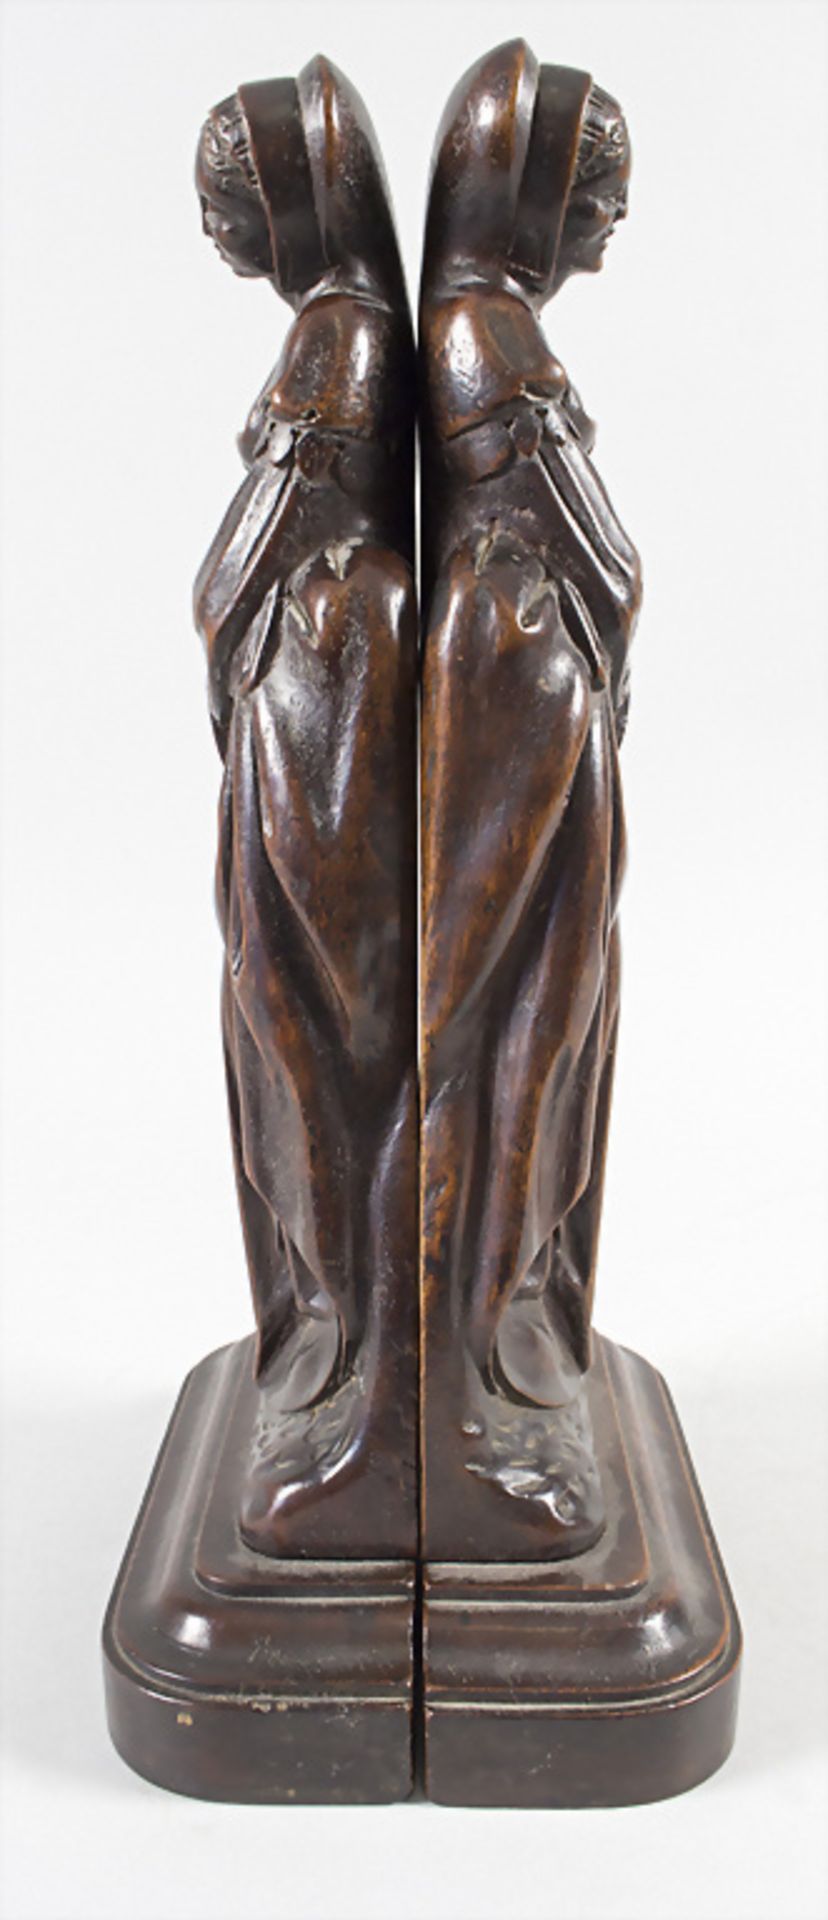 Paar Renaissance Skulpturen / A pair of Renaissance wooden sculptures, wohl 16. Jh. - Image 5 of 6